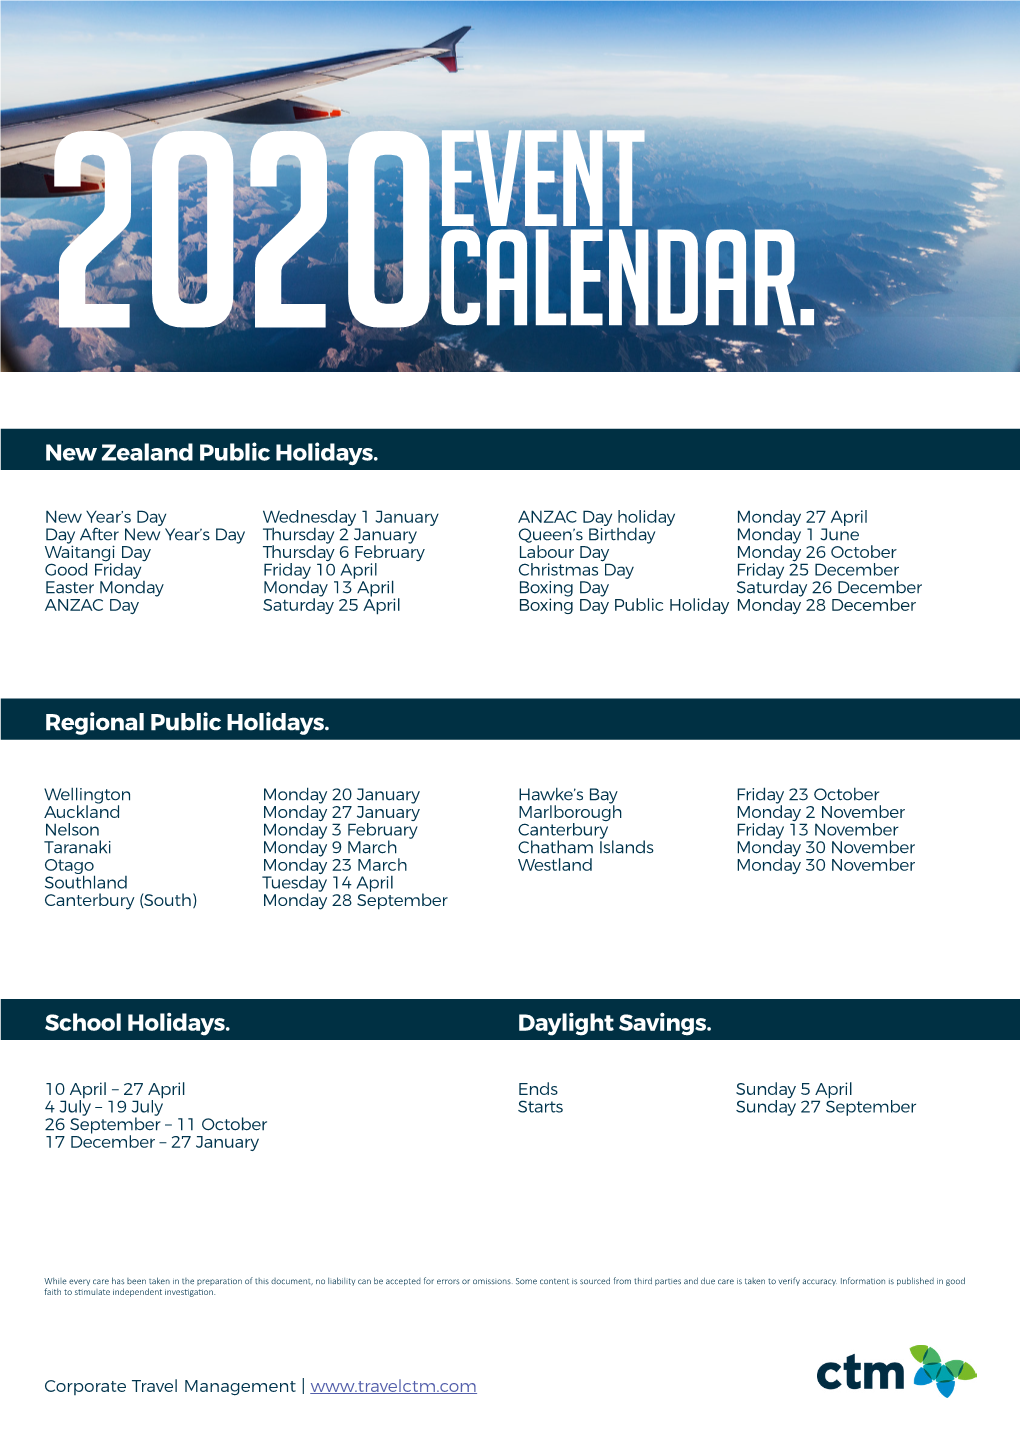 Nz Event Calendar 2020